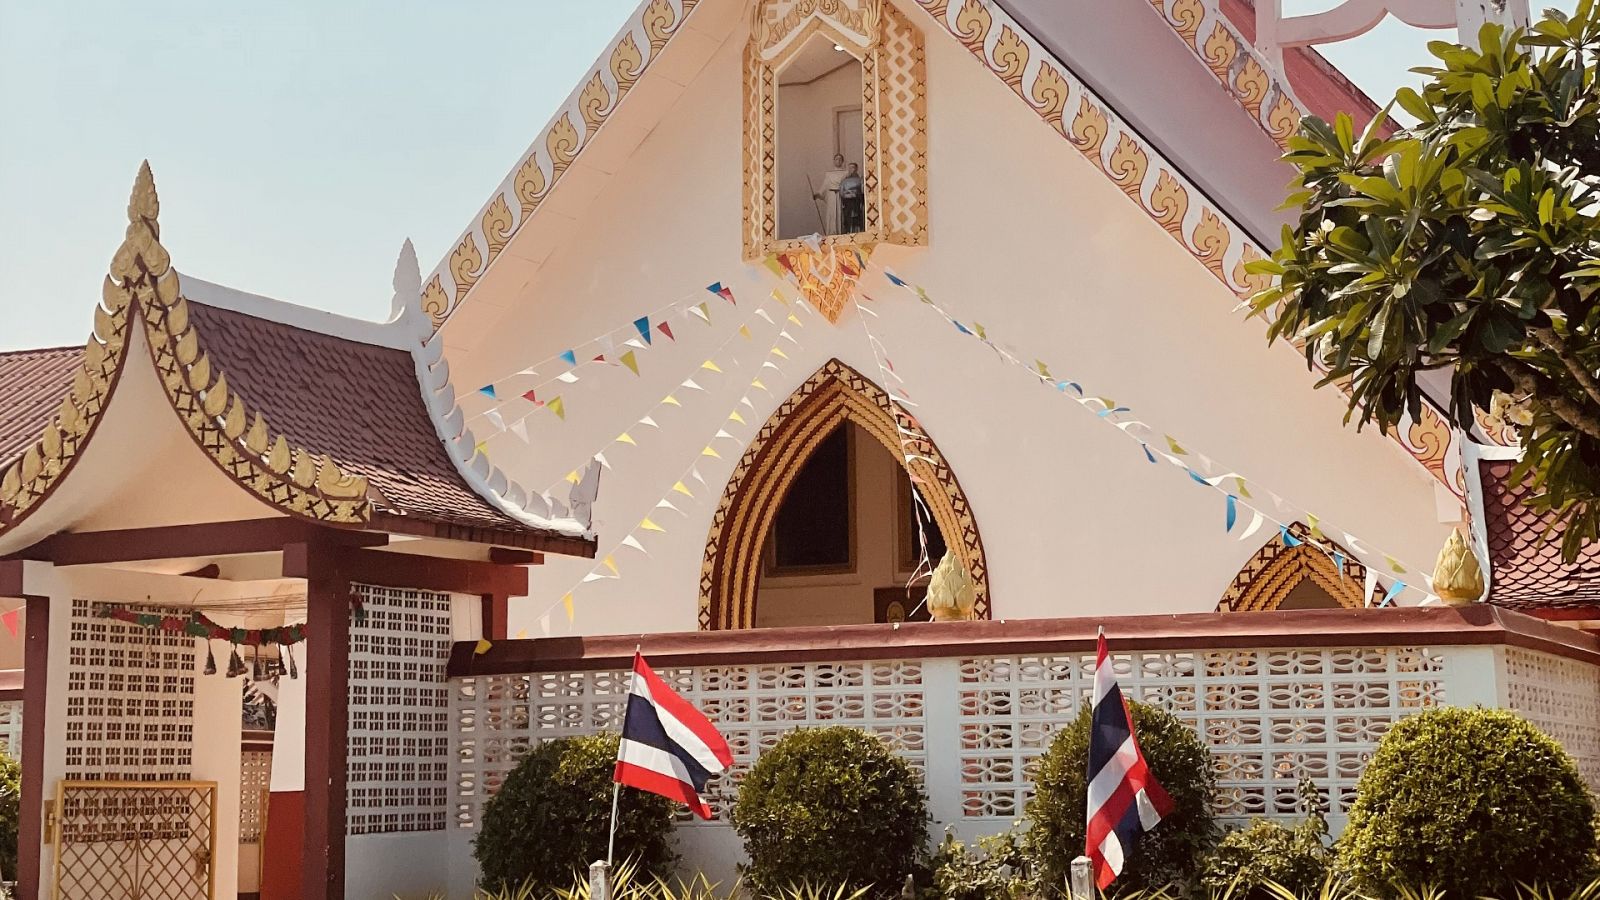 Pueblo de Dios - Kilmetros de Misin en Tailandia - ver ahora